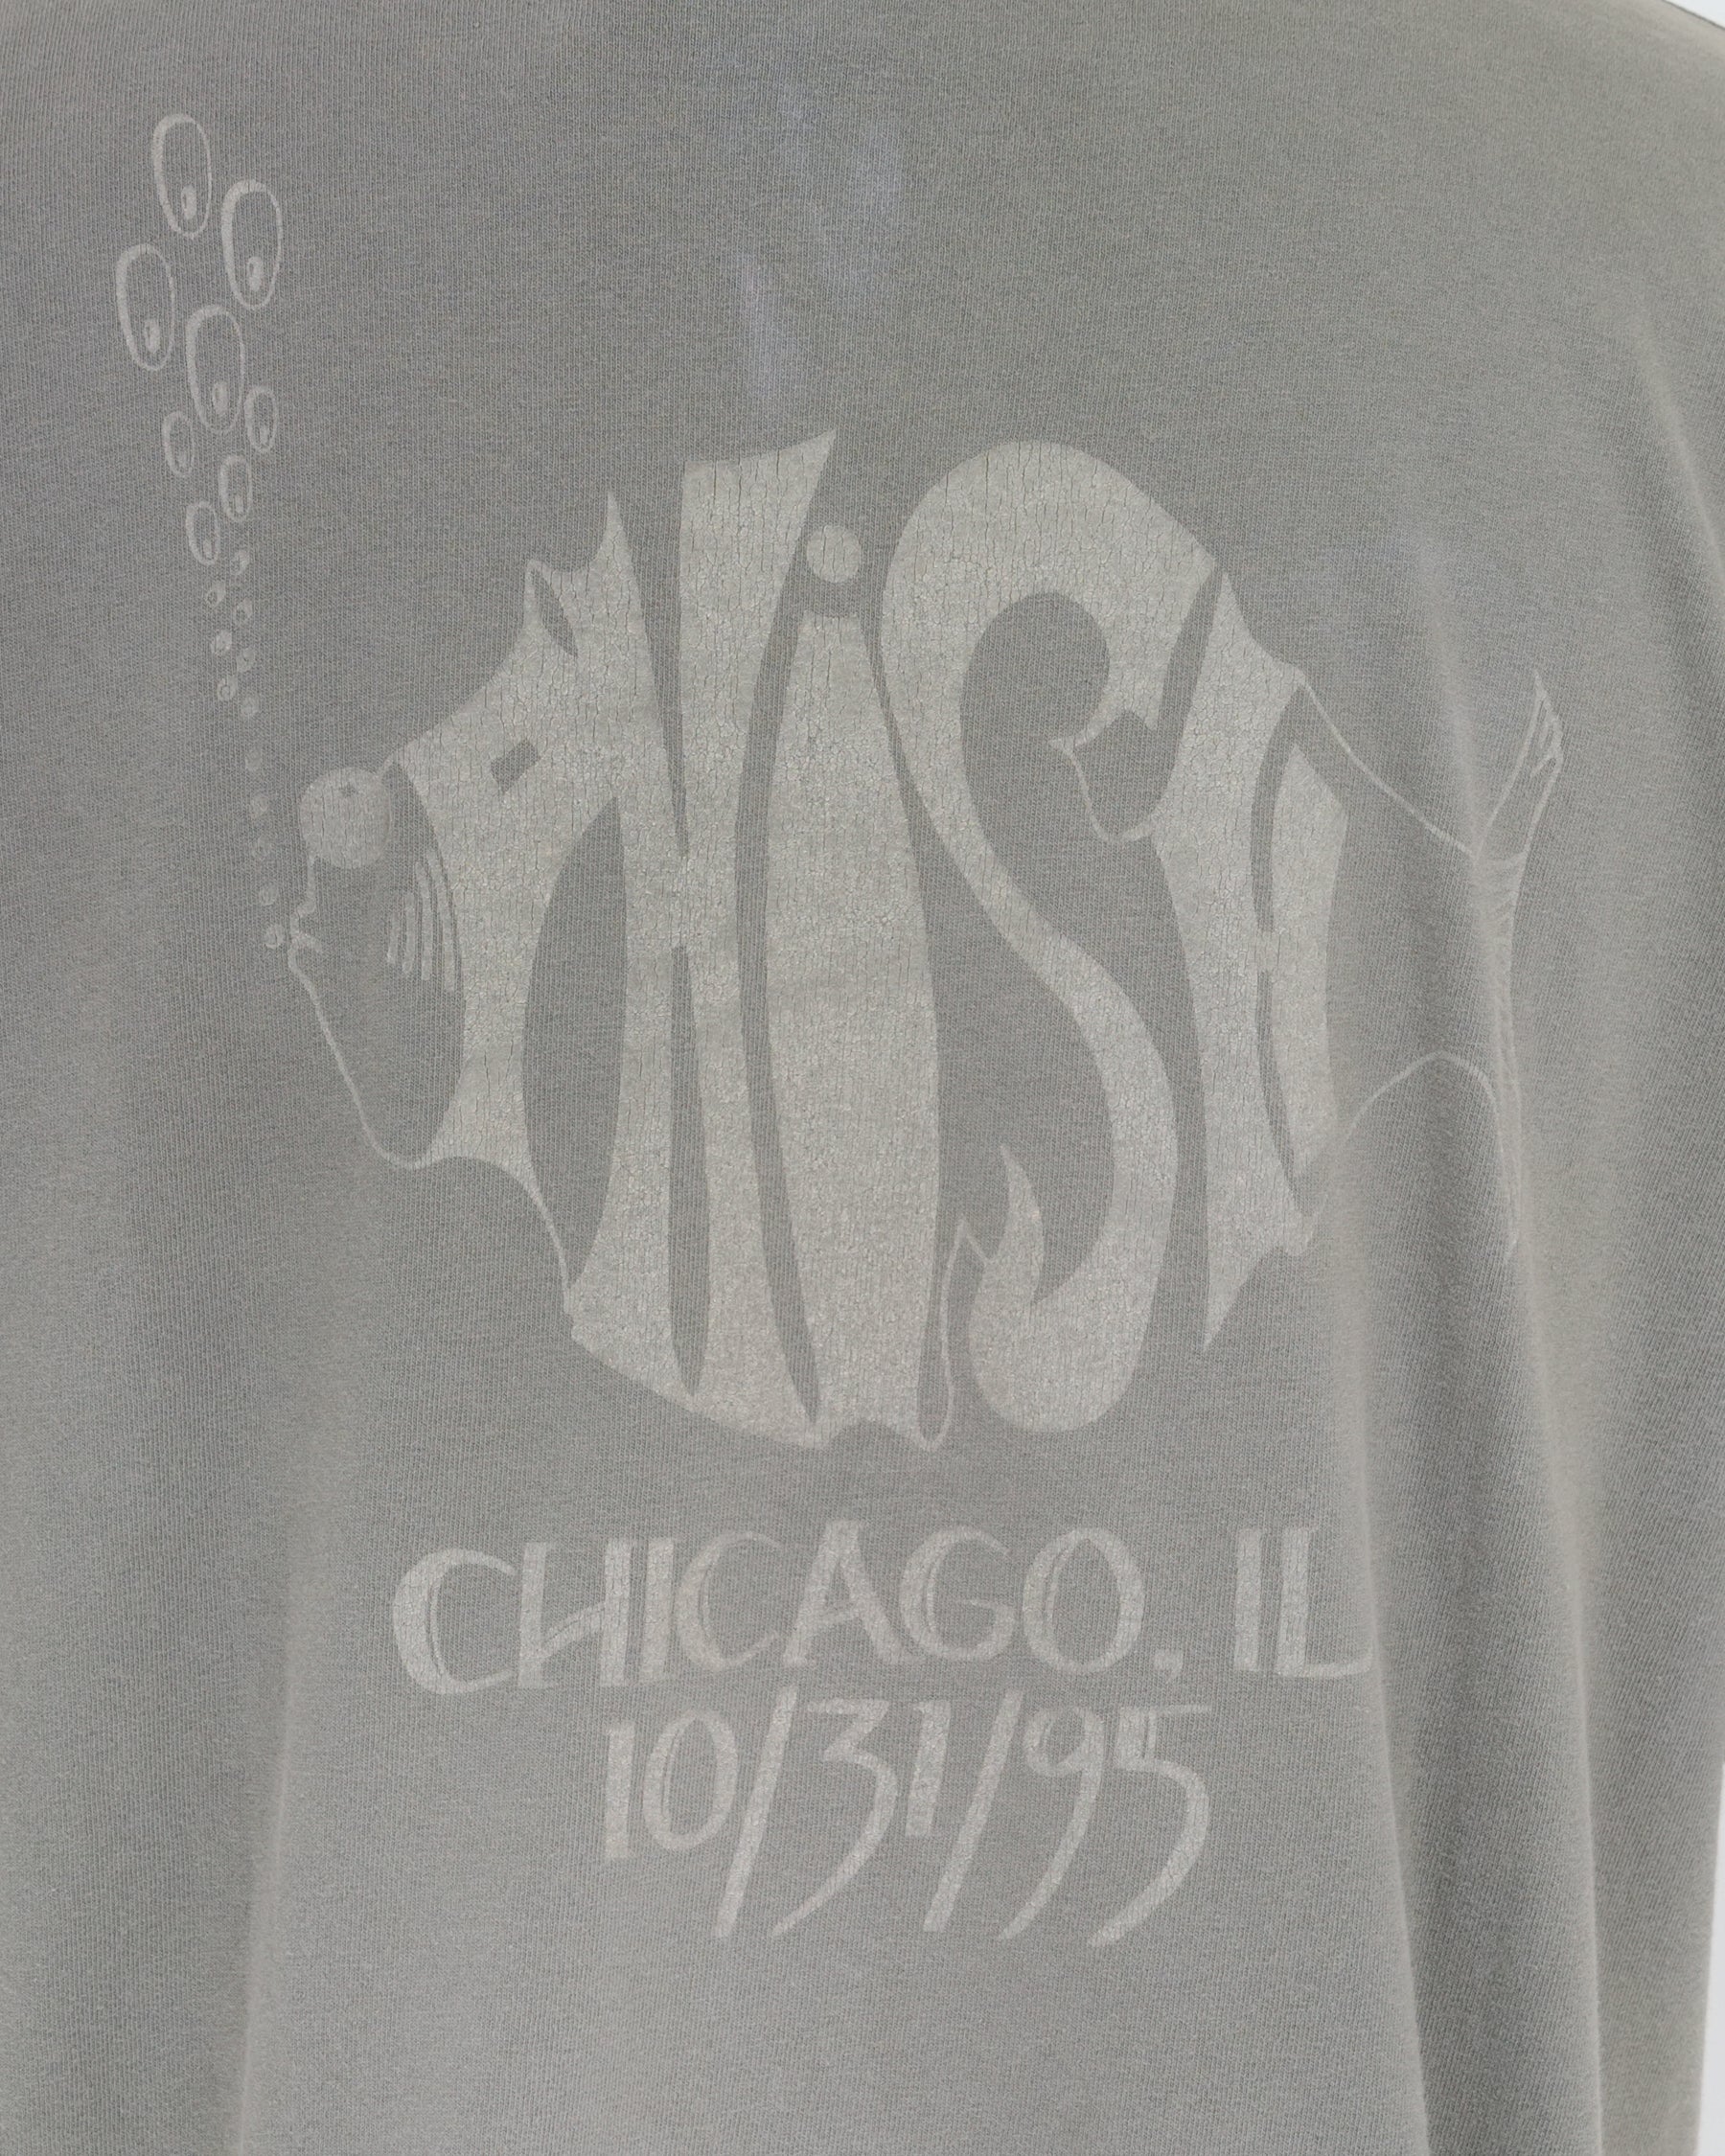 1990's PHISH Printed T-shirt